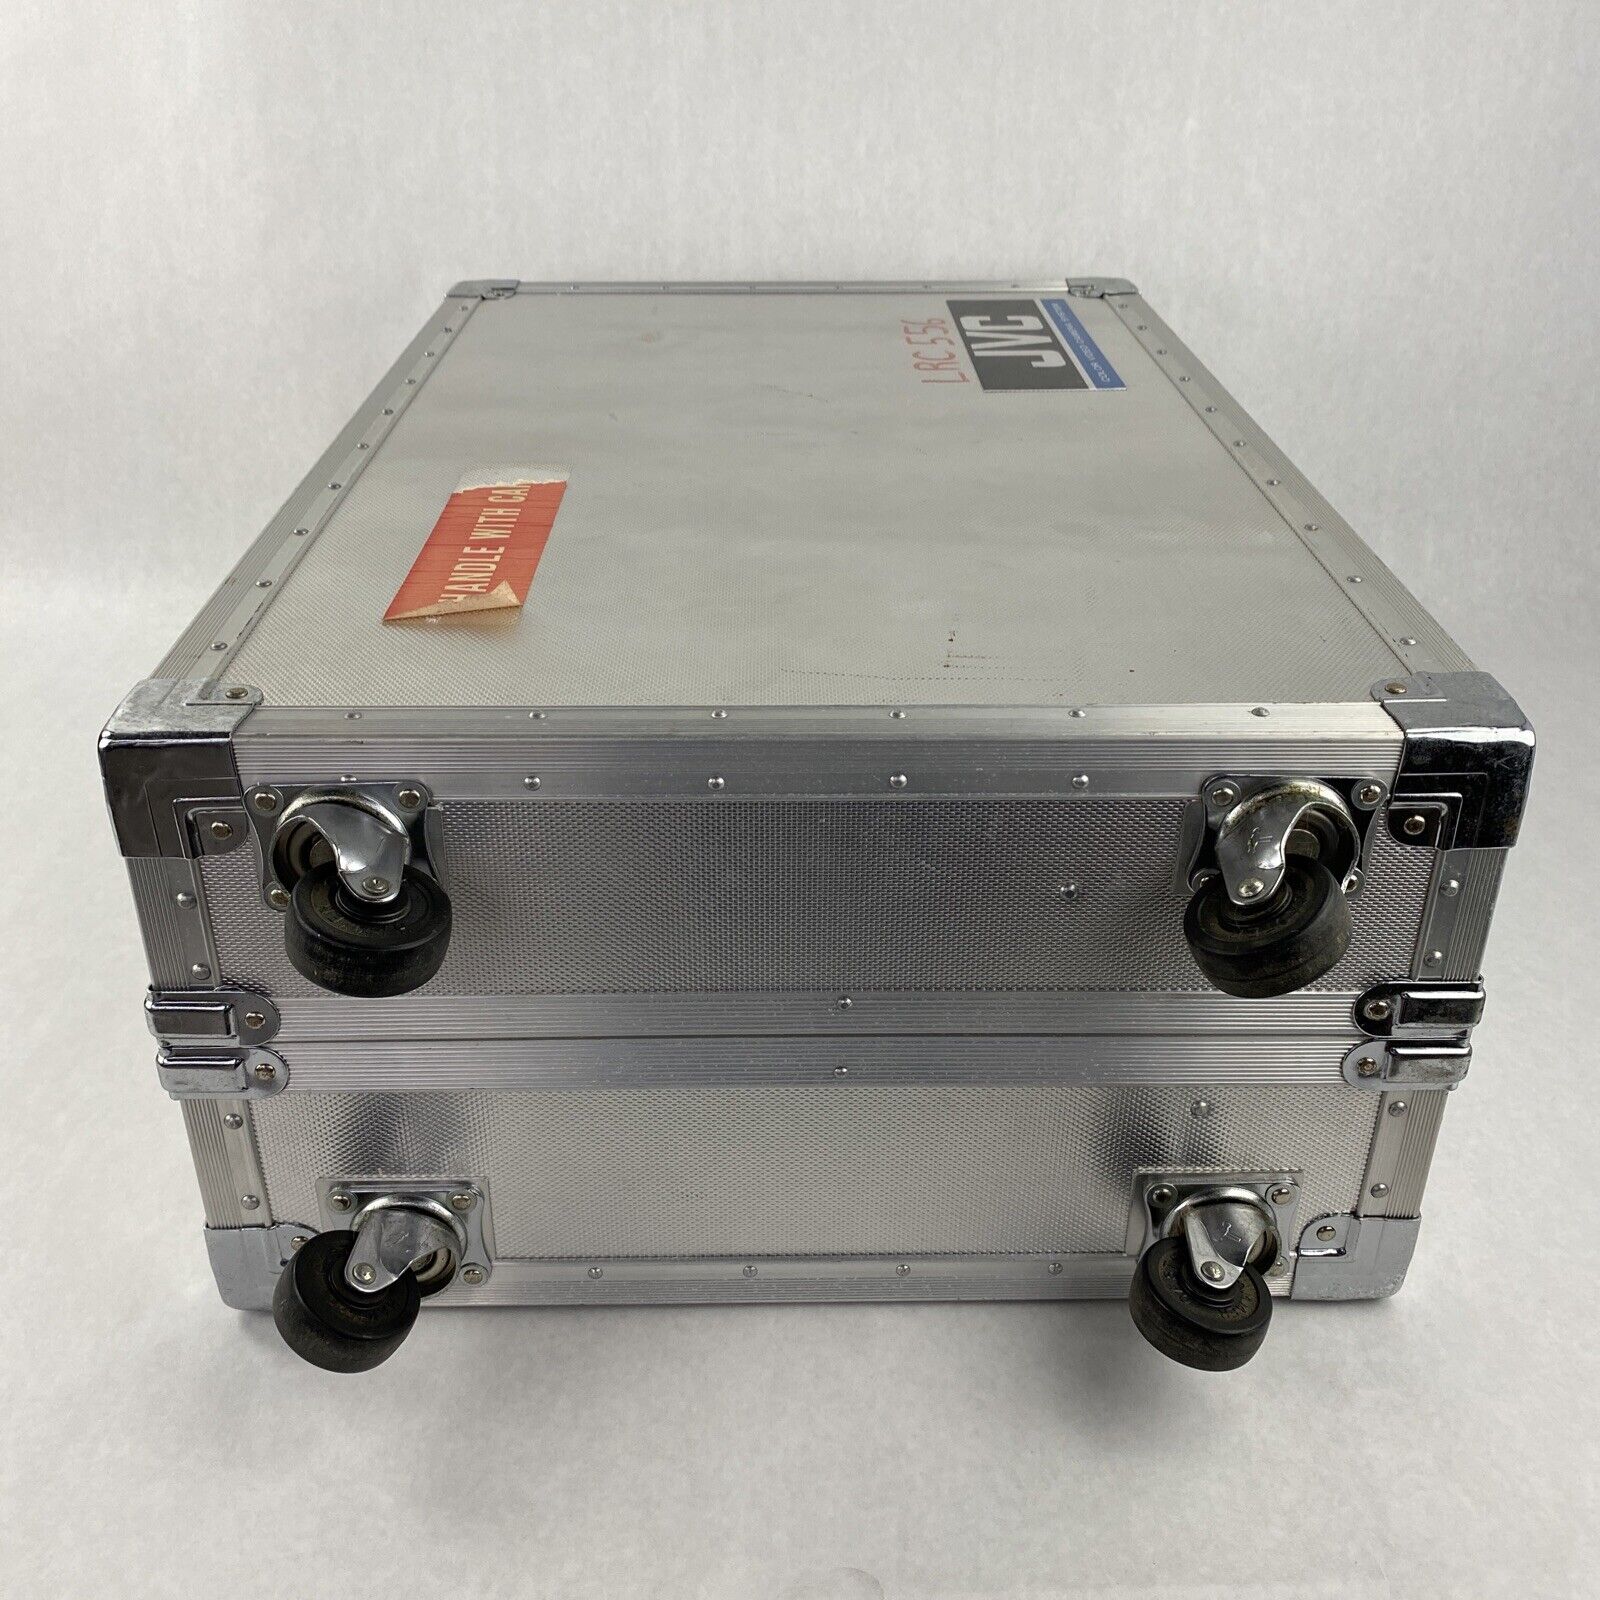 Vintage JVC CB-44U Color Camera System Carrying Case w/ OEM Separators